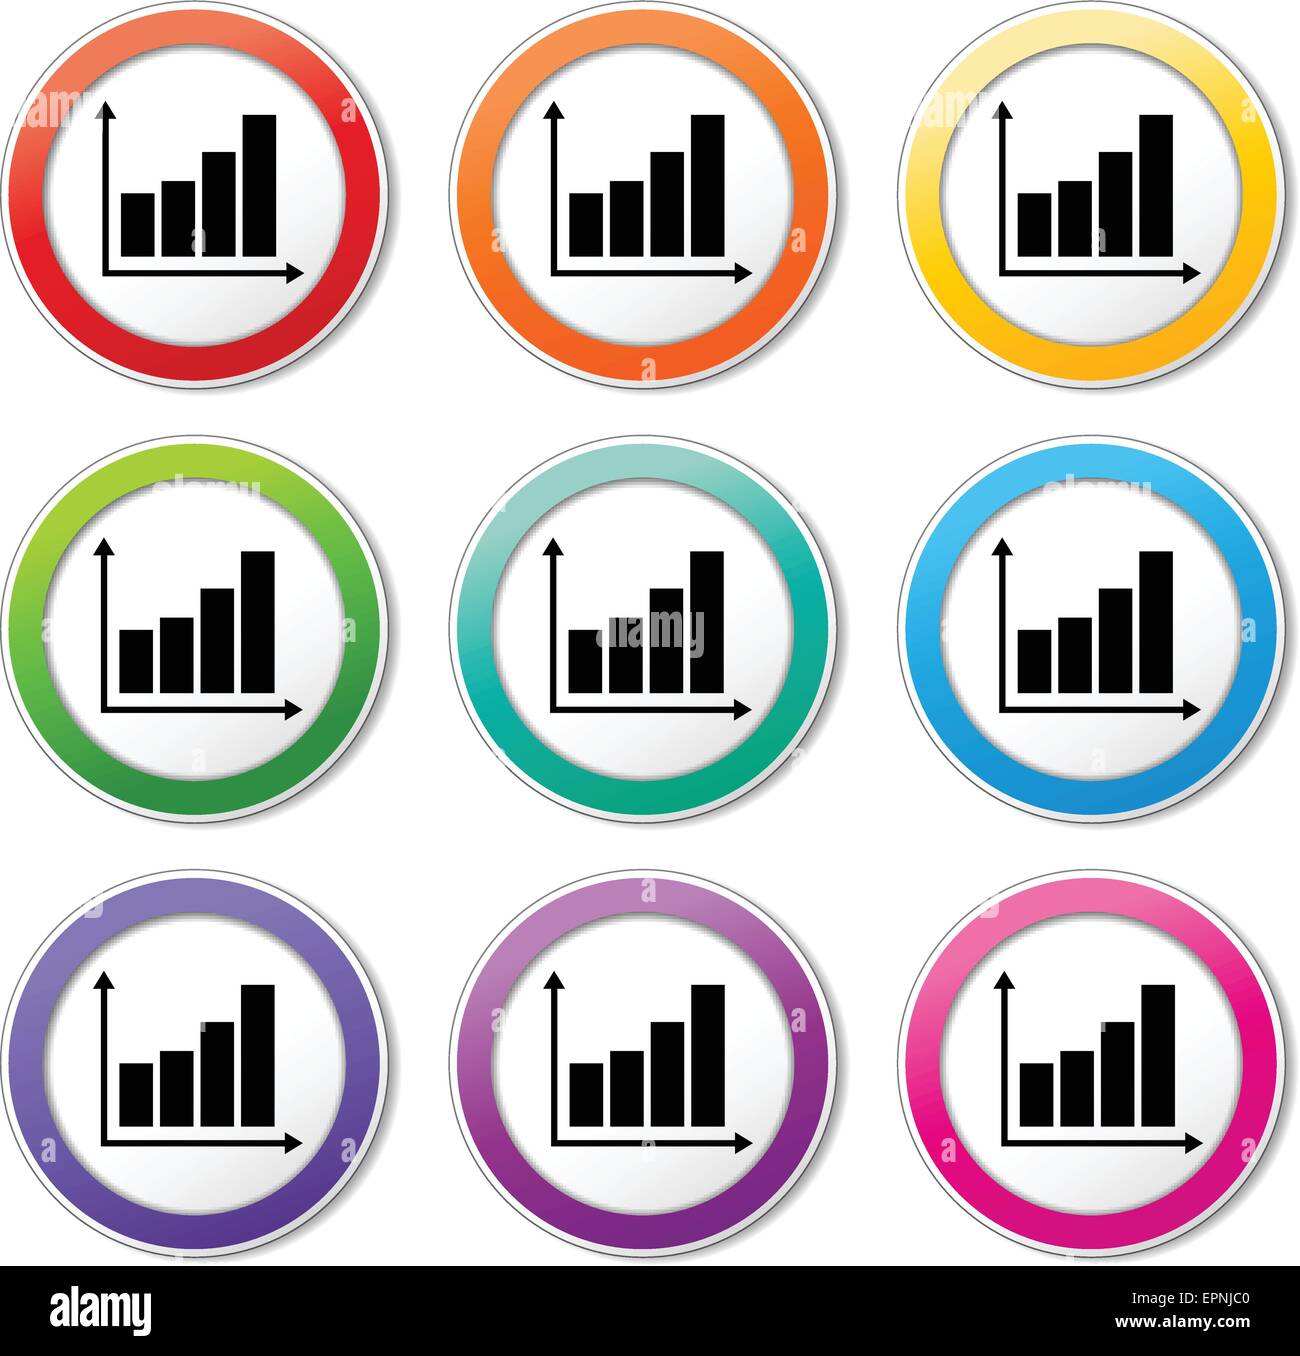 Illustrazione di vari colori set di icone grafico Illustrazione Vettoriale